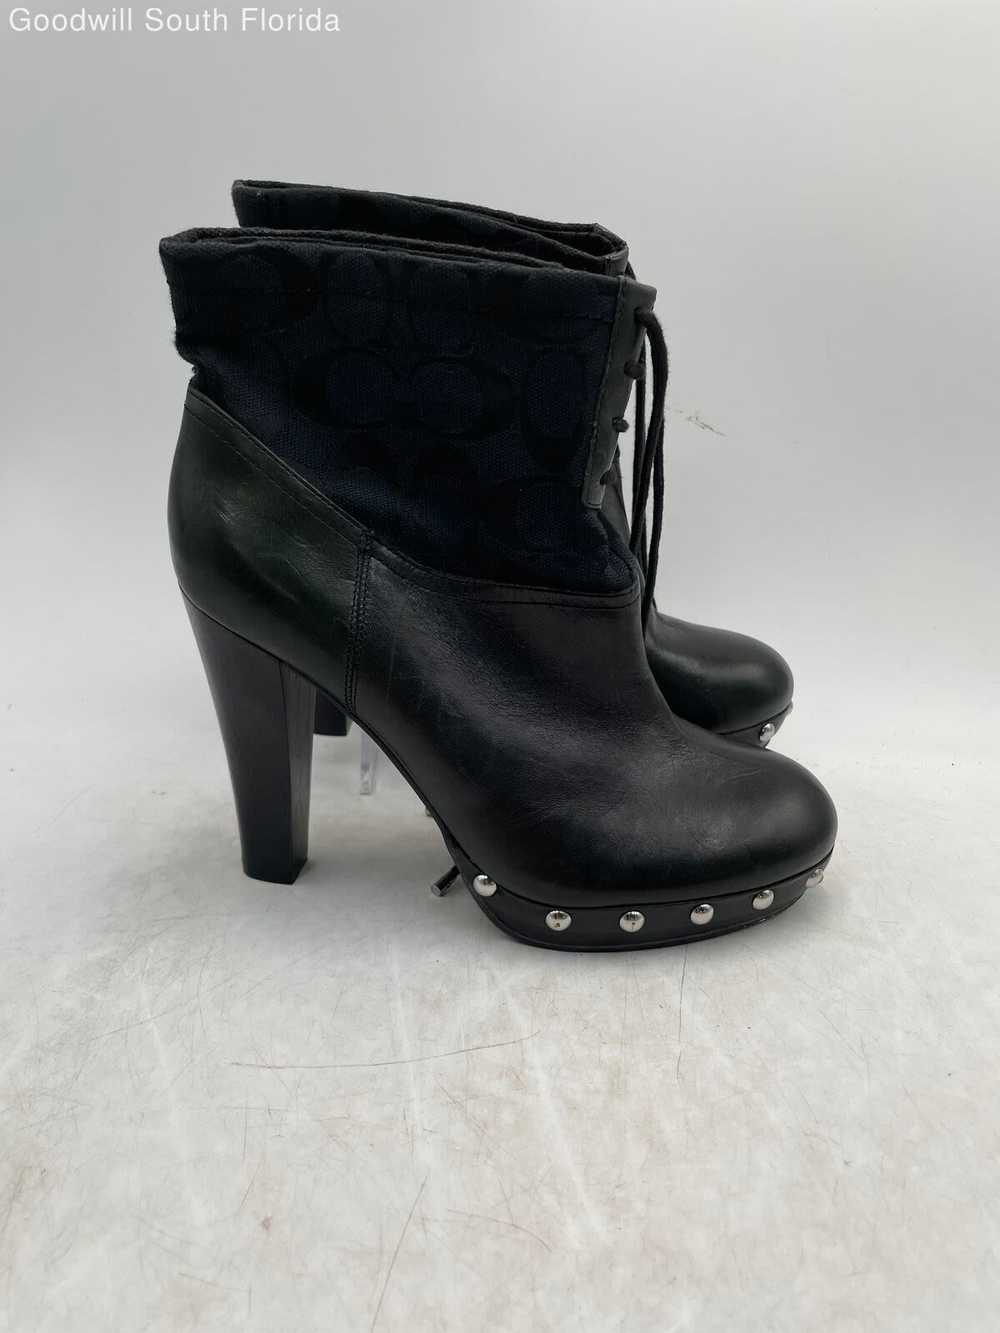 Coach Womens Black Shoes Size 7.5 - image 2